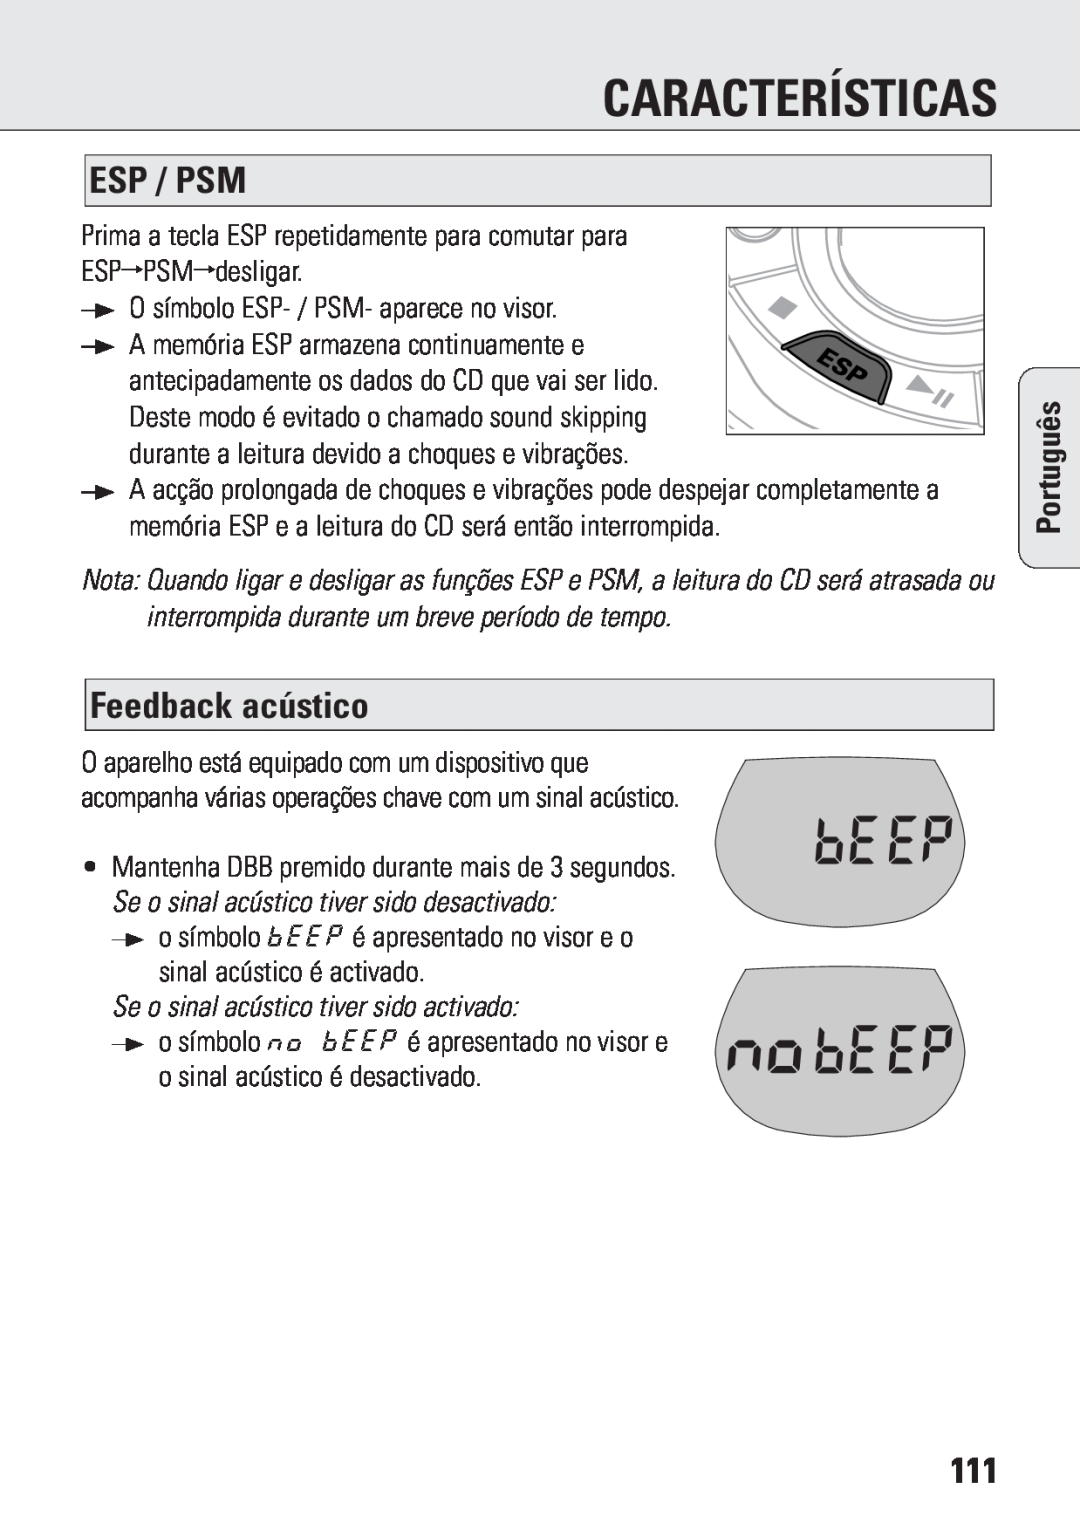 Philips ACT 7583 manual Feedback acústico, Se o sinal acústico tiver sido activado, Características, Esp / Psm, Português 